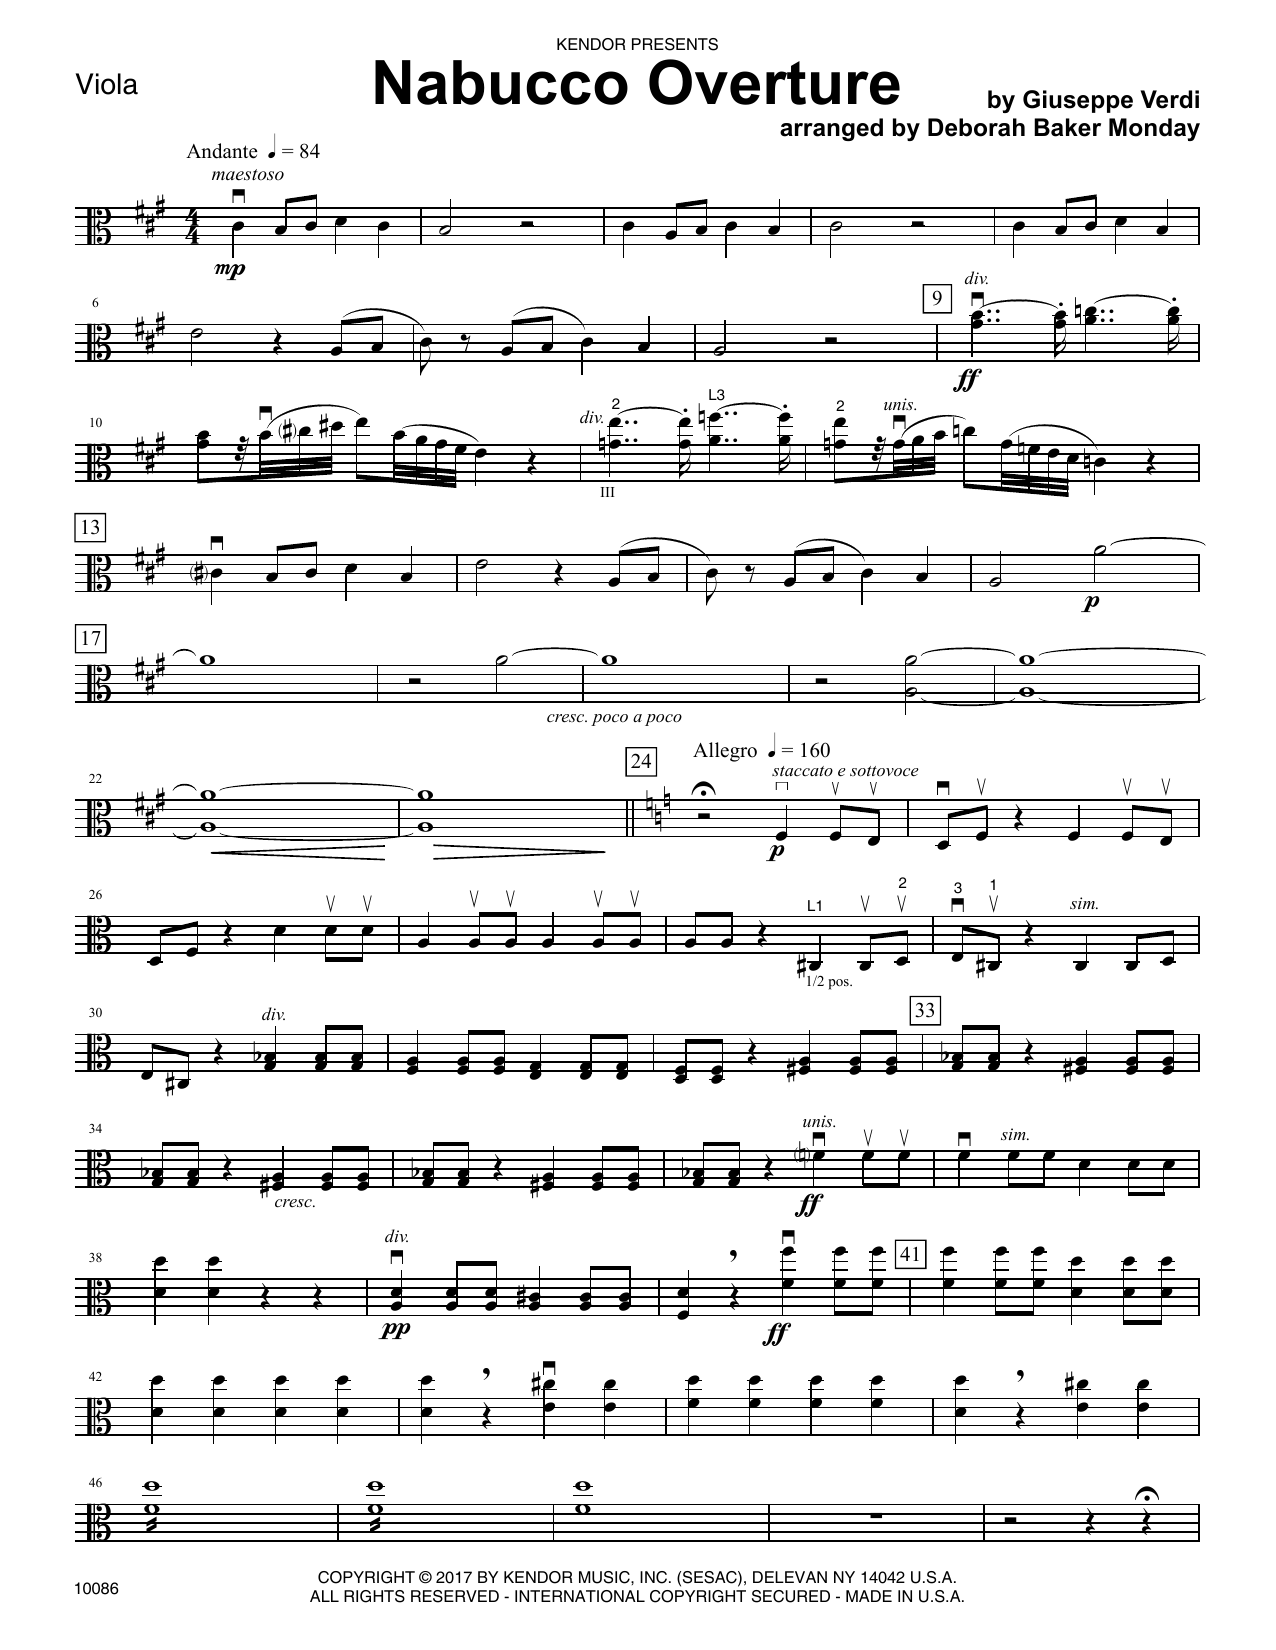 Download Deborah Baker Monday Nabucco Overture - Viola Sheet Music